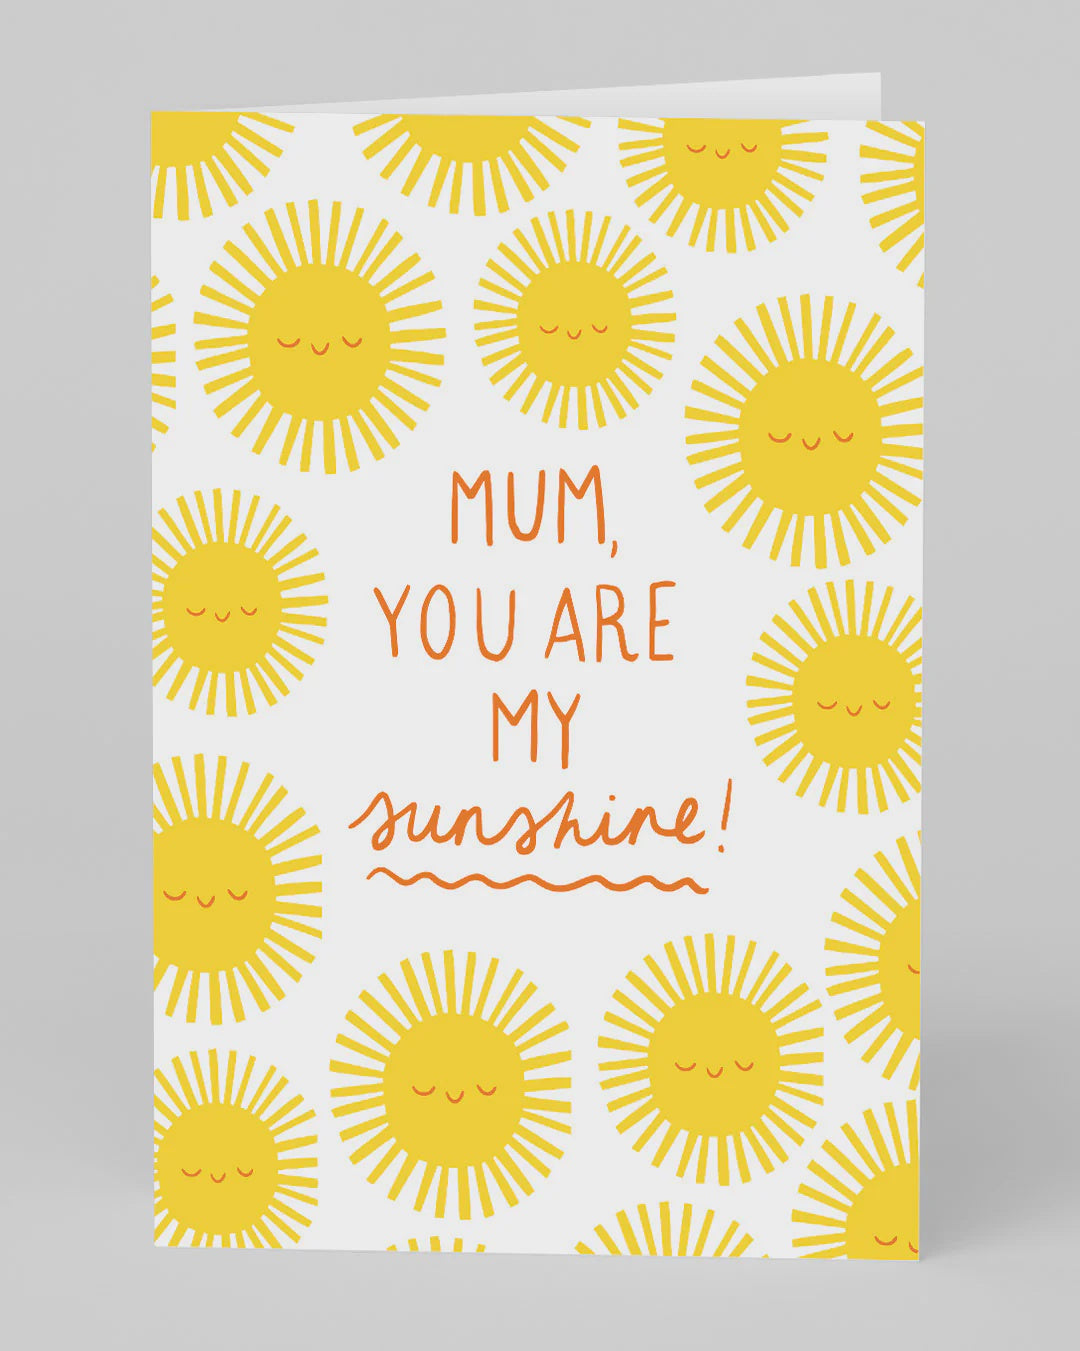 Mum, You Are My Sunshine